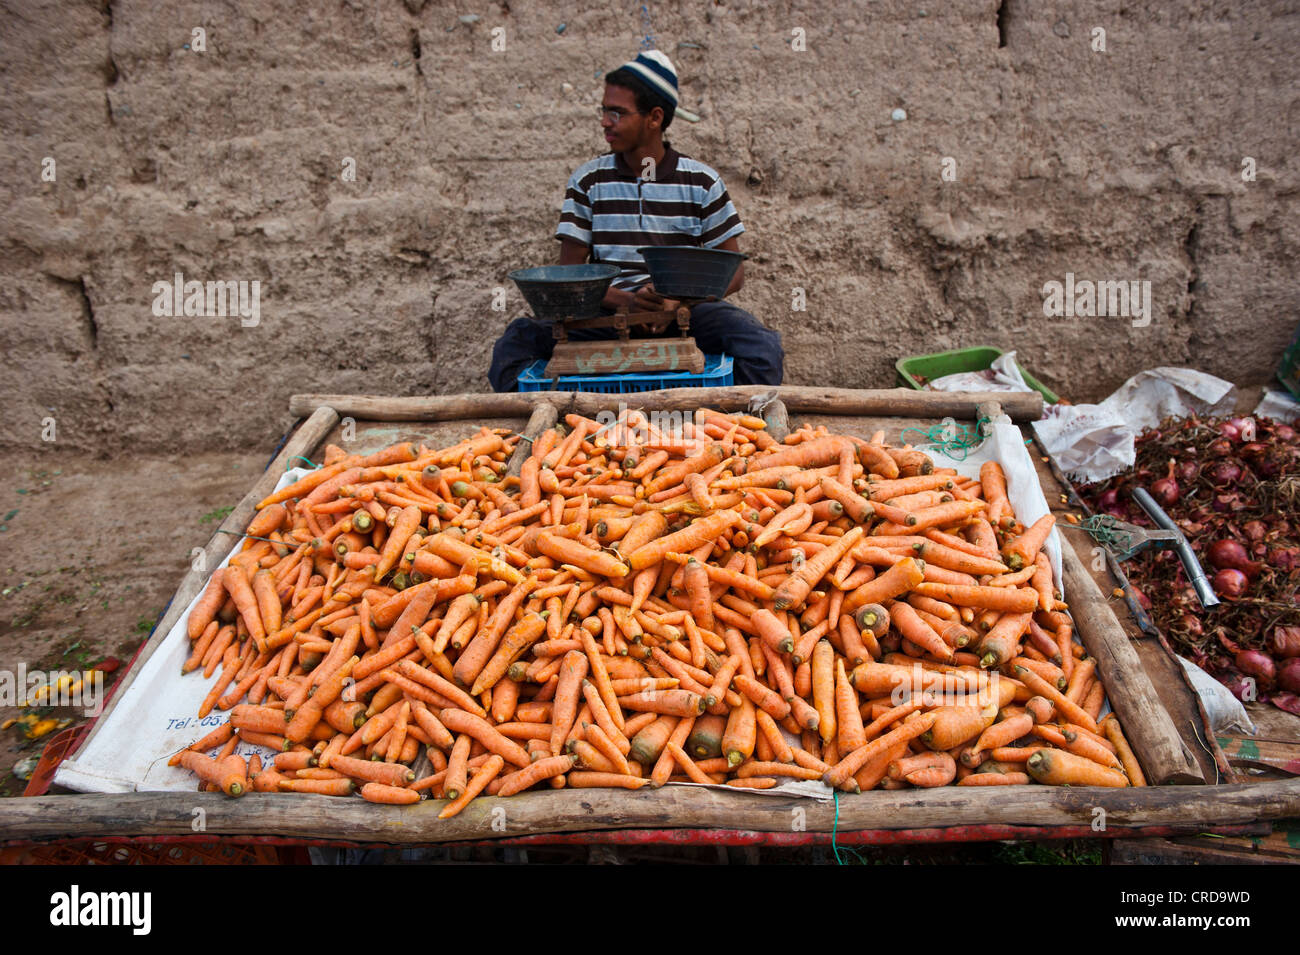 Vendeur de carottes , Rissani, Maroc Banque D'Images